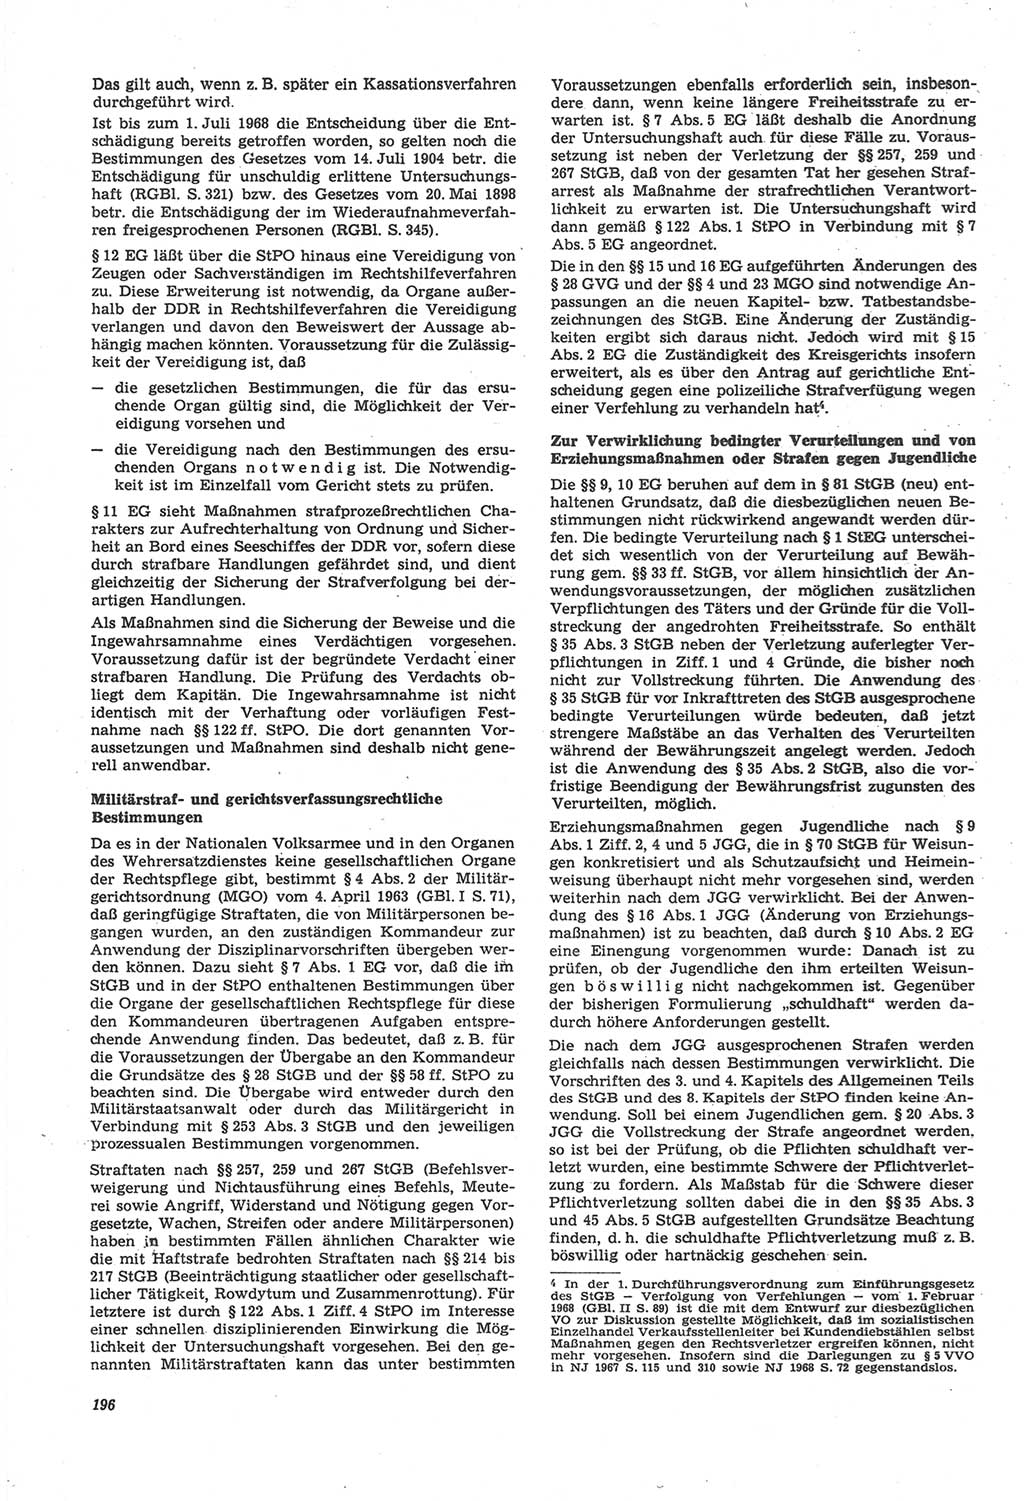 Neue Justiz (NJ), Zeitschrift für Recht und Rechtswissenschaft [Deutsche Demokratische Republik (DDR)], 22. Jahrgang 1968, Seite 196 (NJ DDR 1968, S. 196)